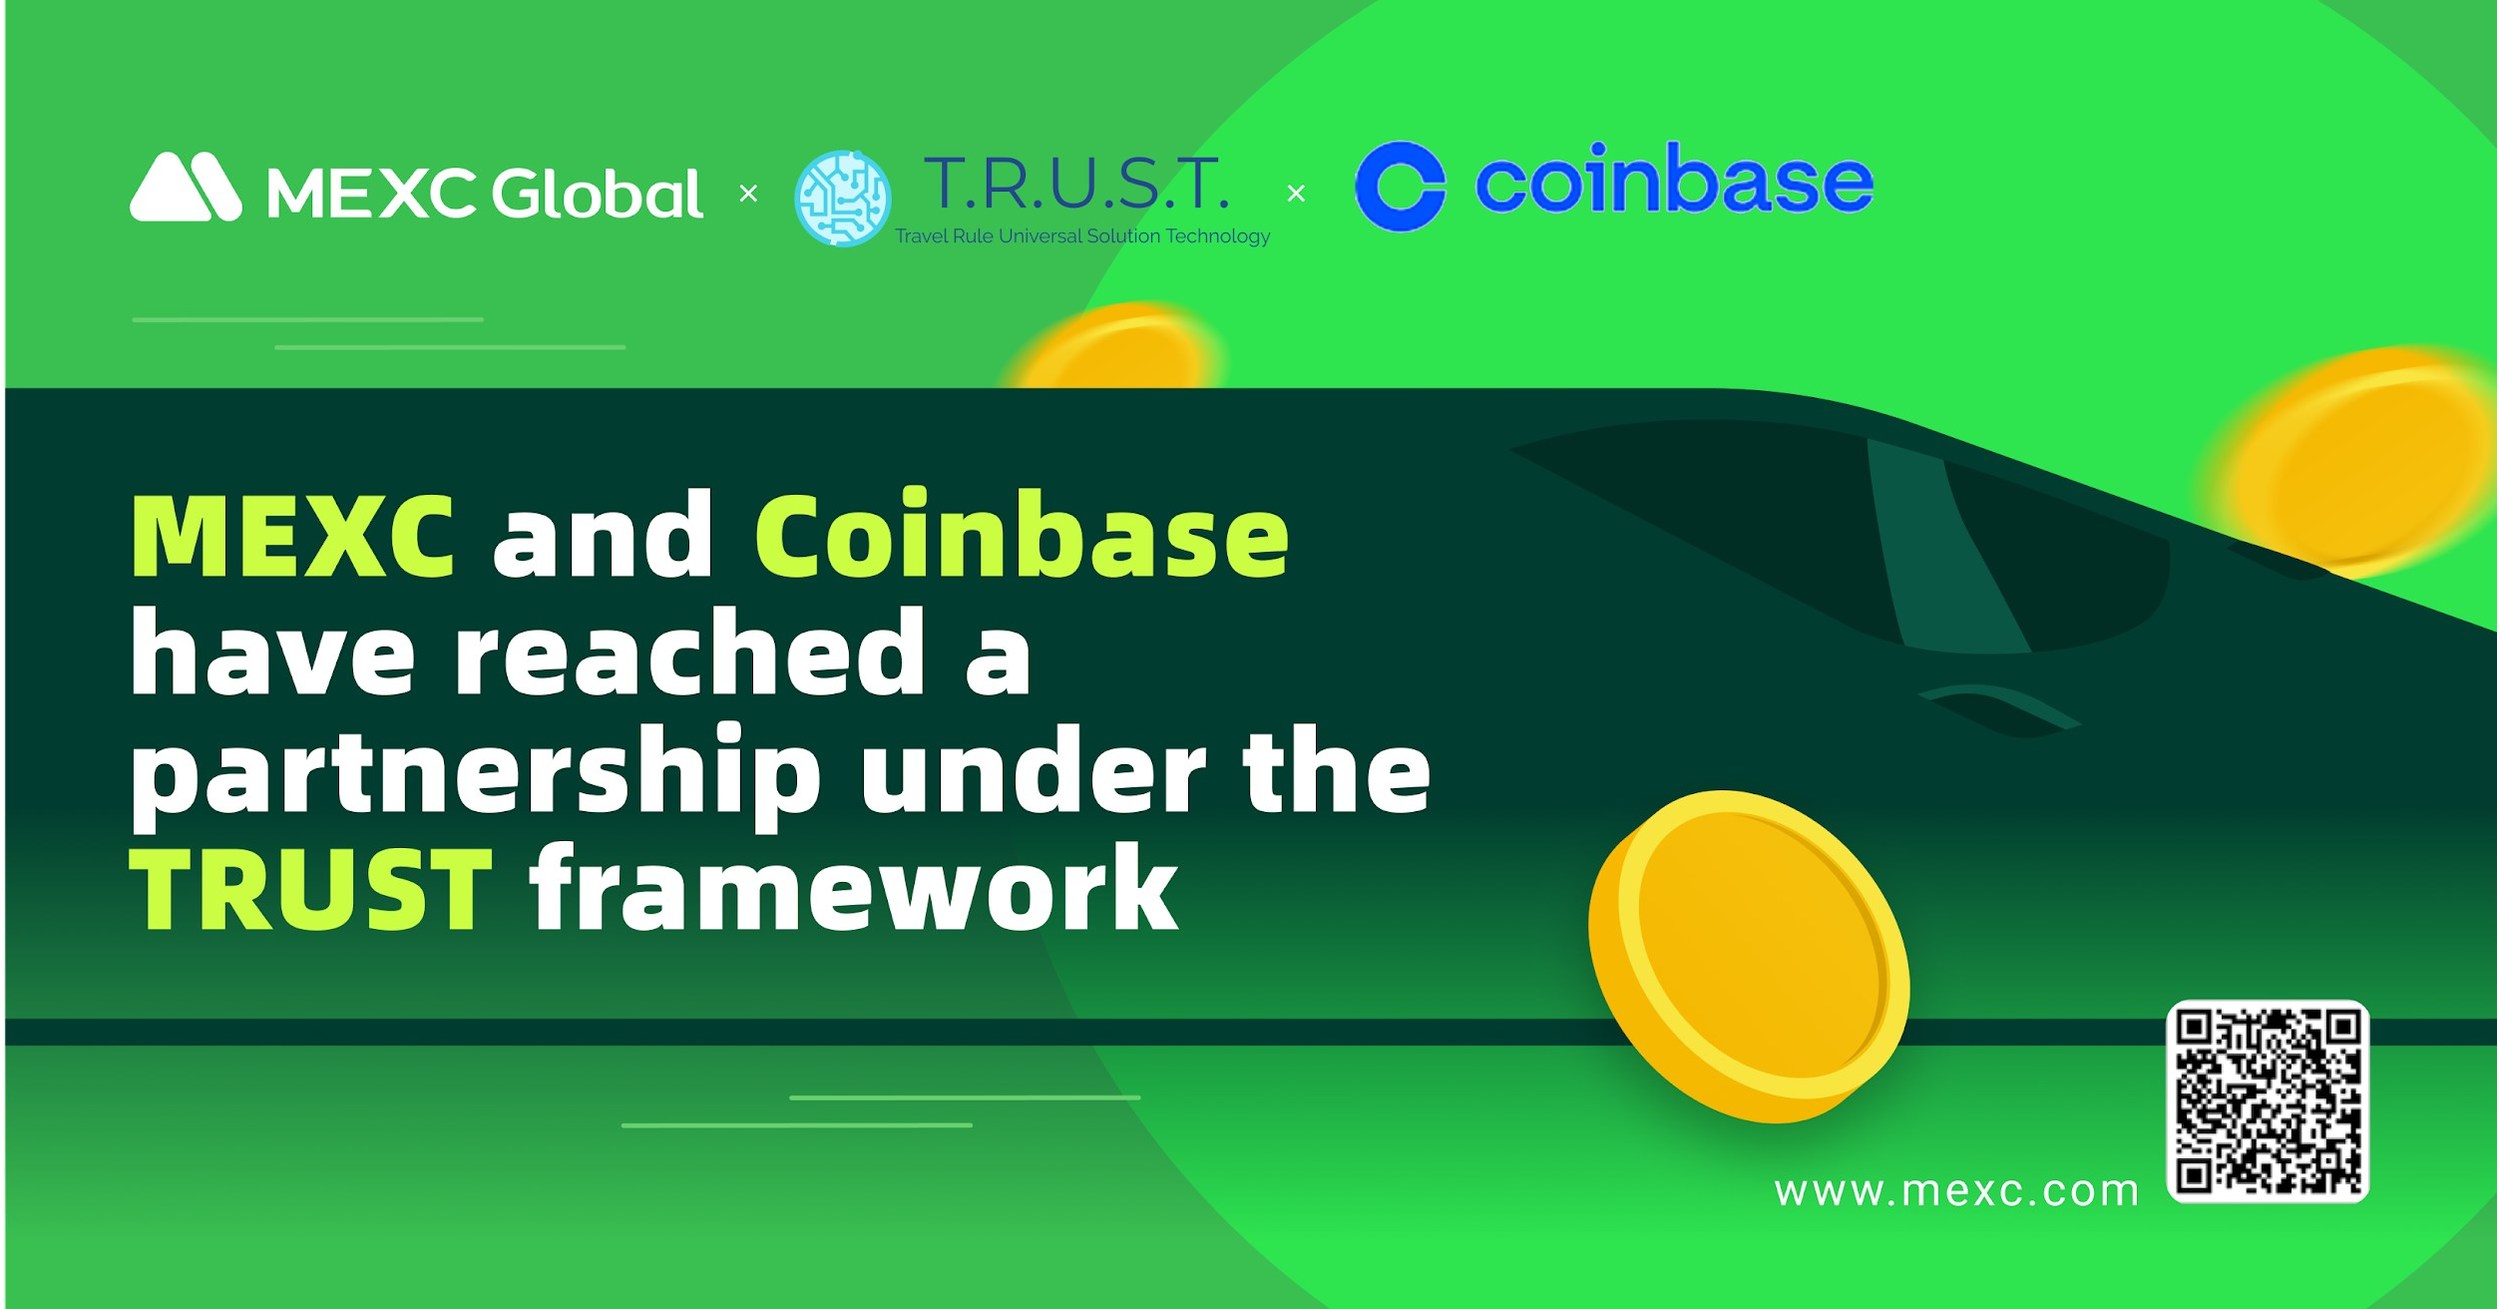 facebook coinbase partnership